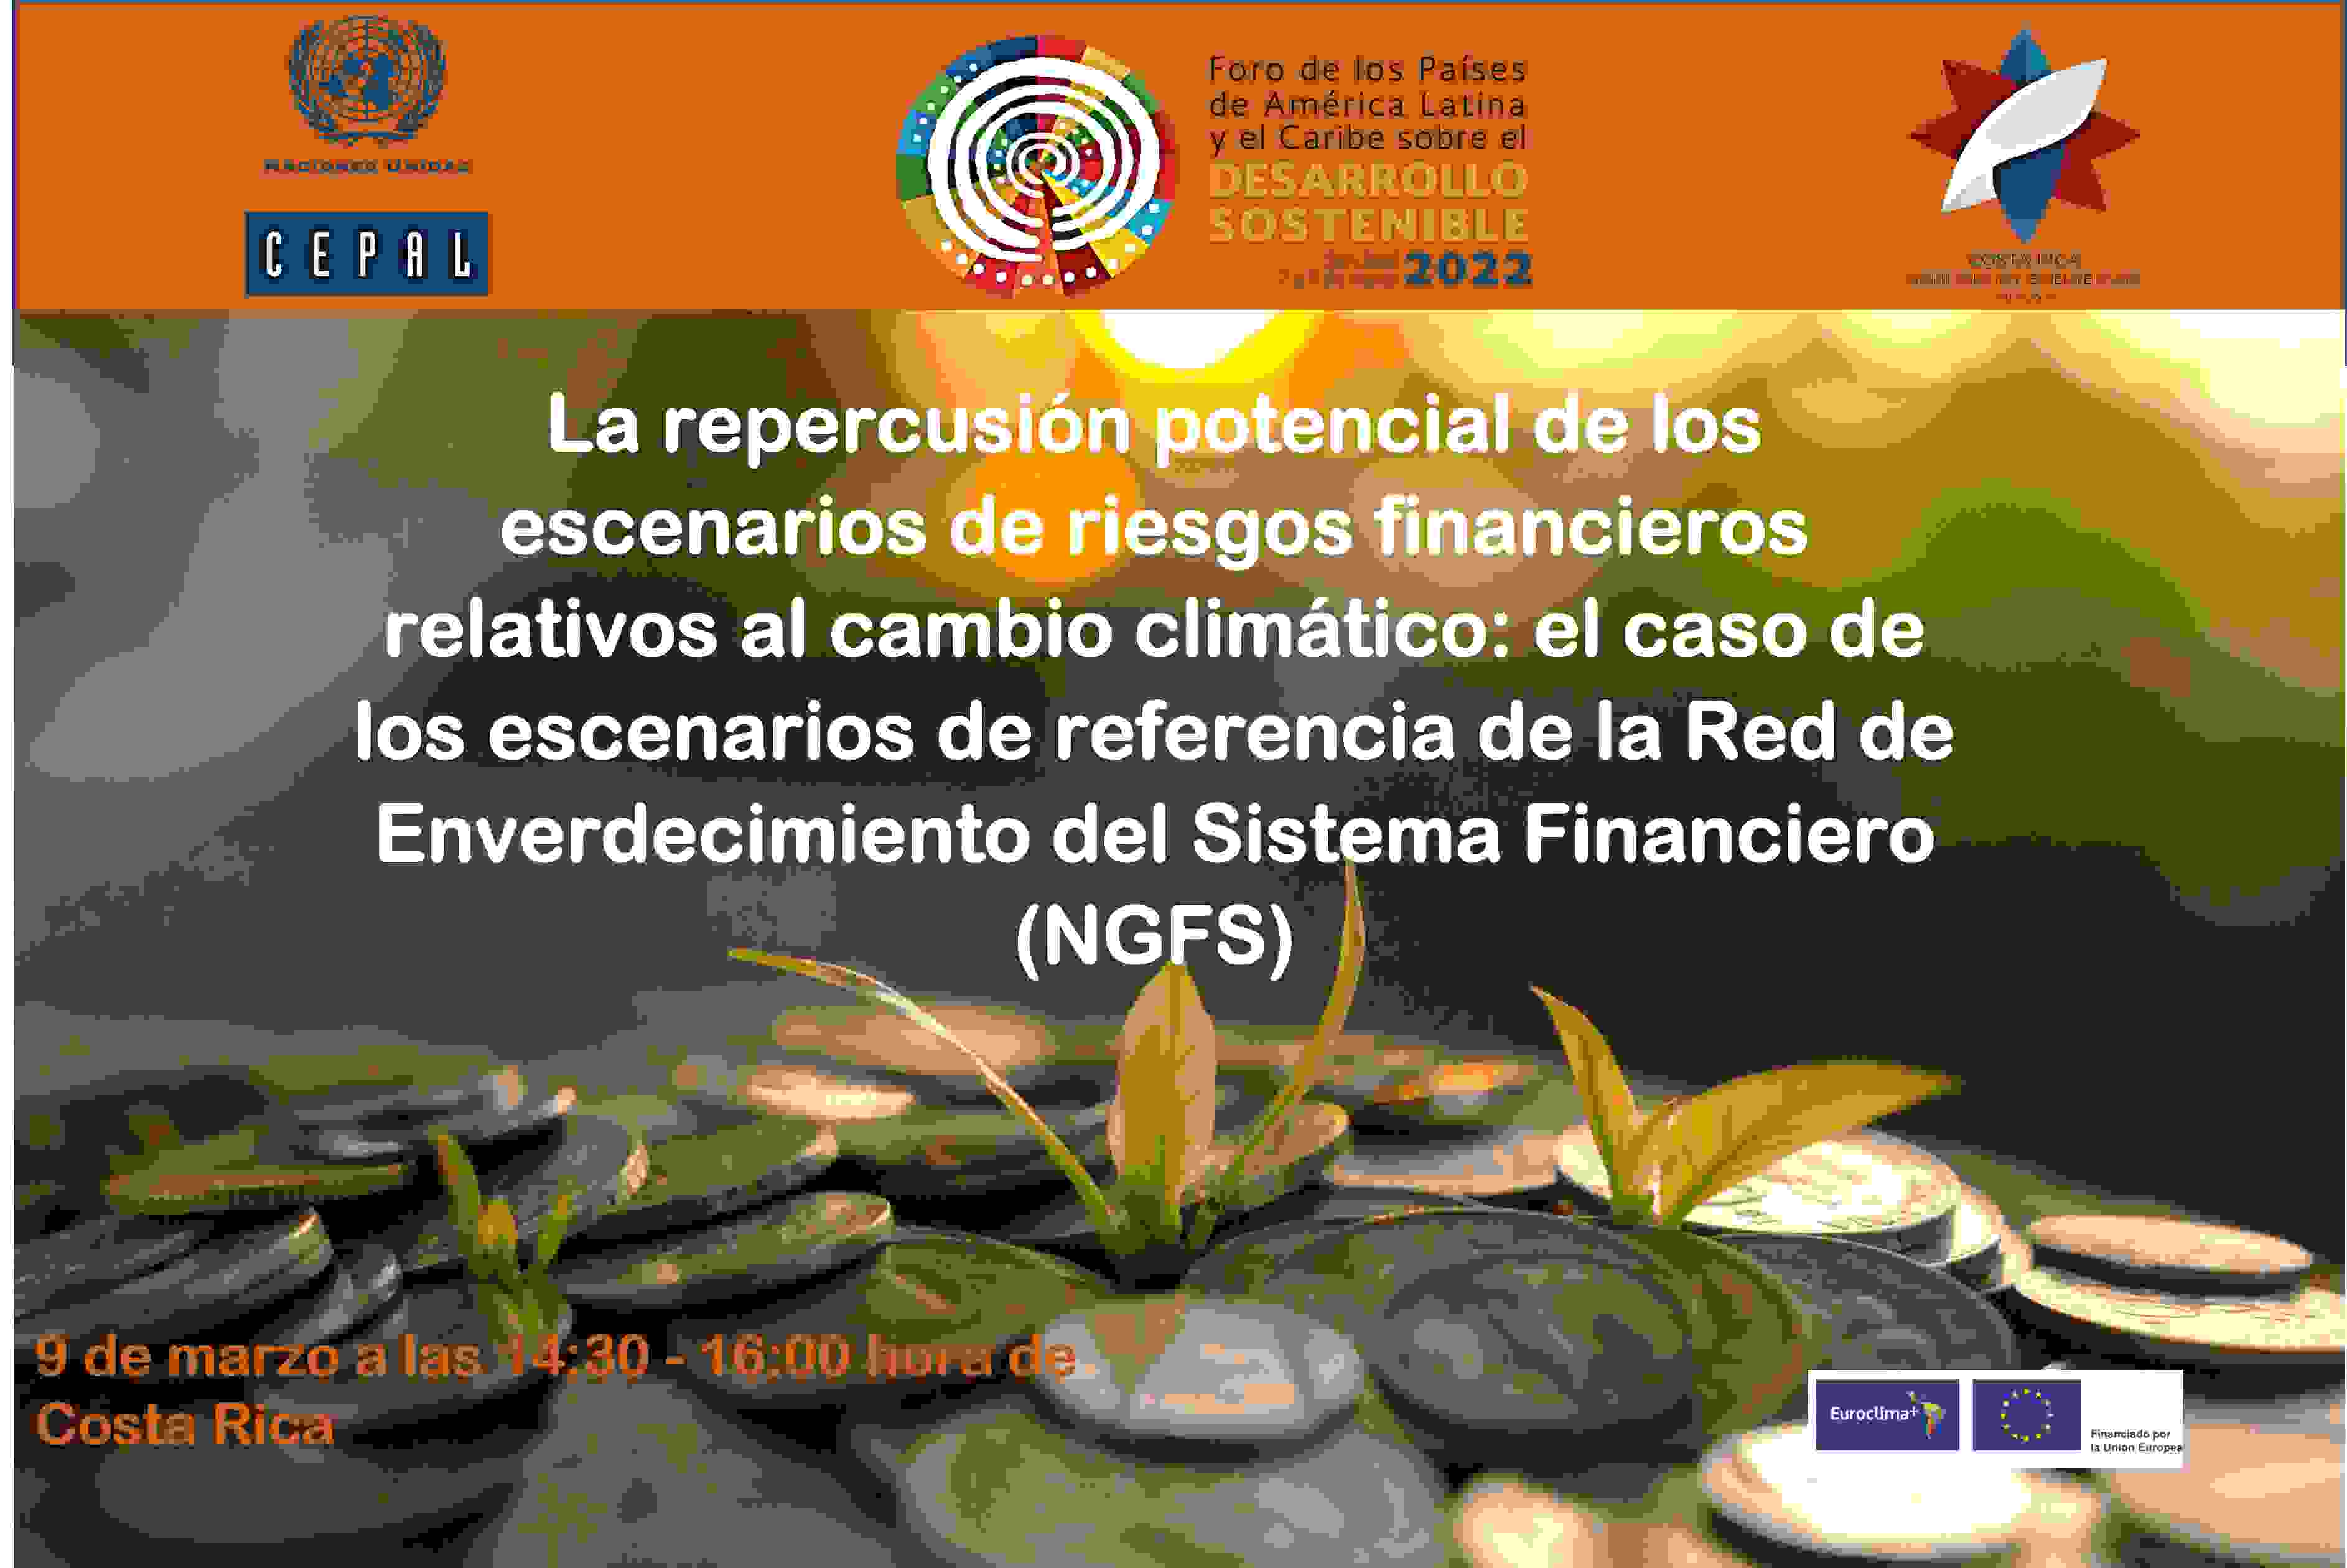 "La repercusión potencial de los escenarios de riesgos financieros relativos al cambio climático: el caso de los escenarios de referencia de la Red de Enverdecimiento del Sistema Financiero (NGFS) "